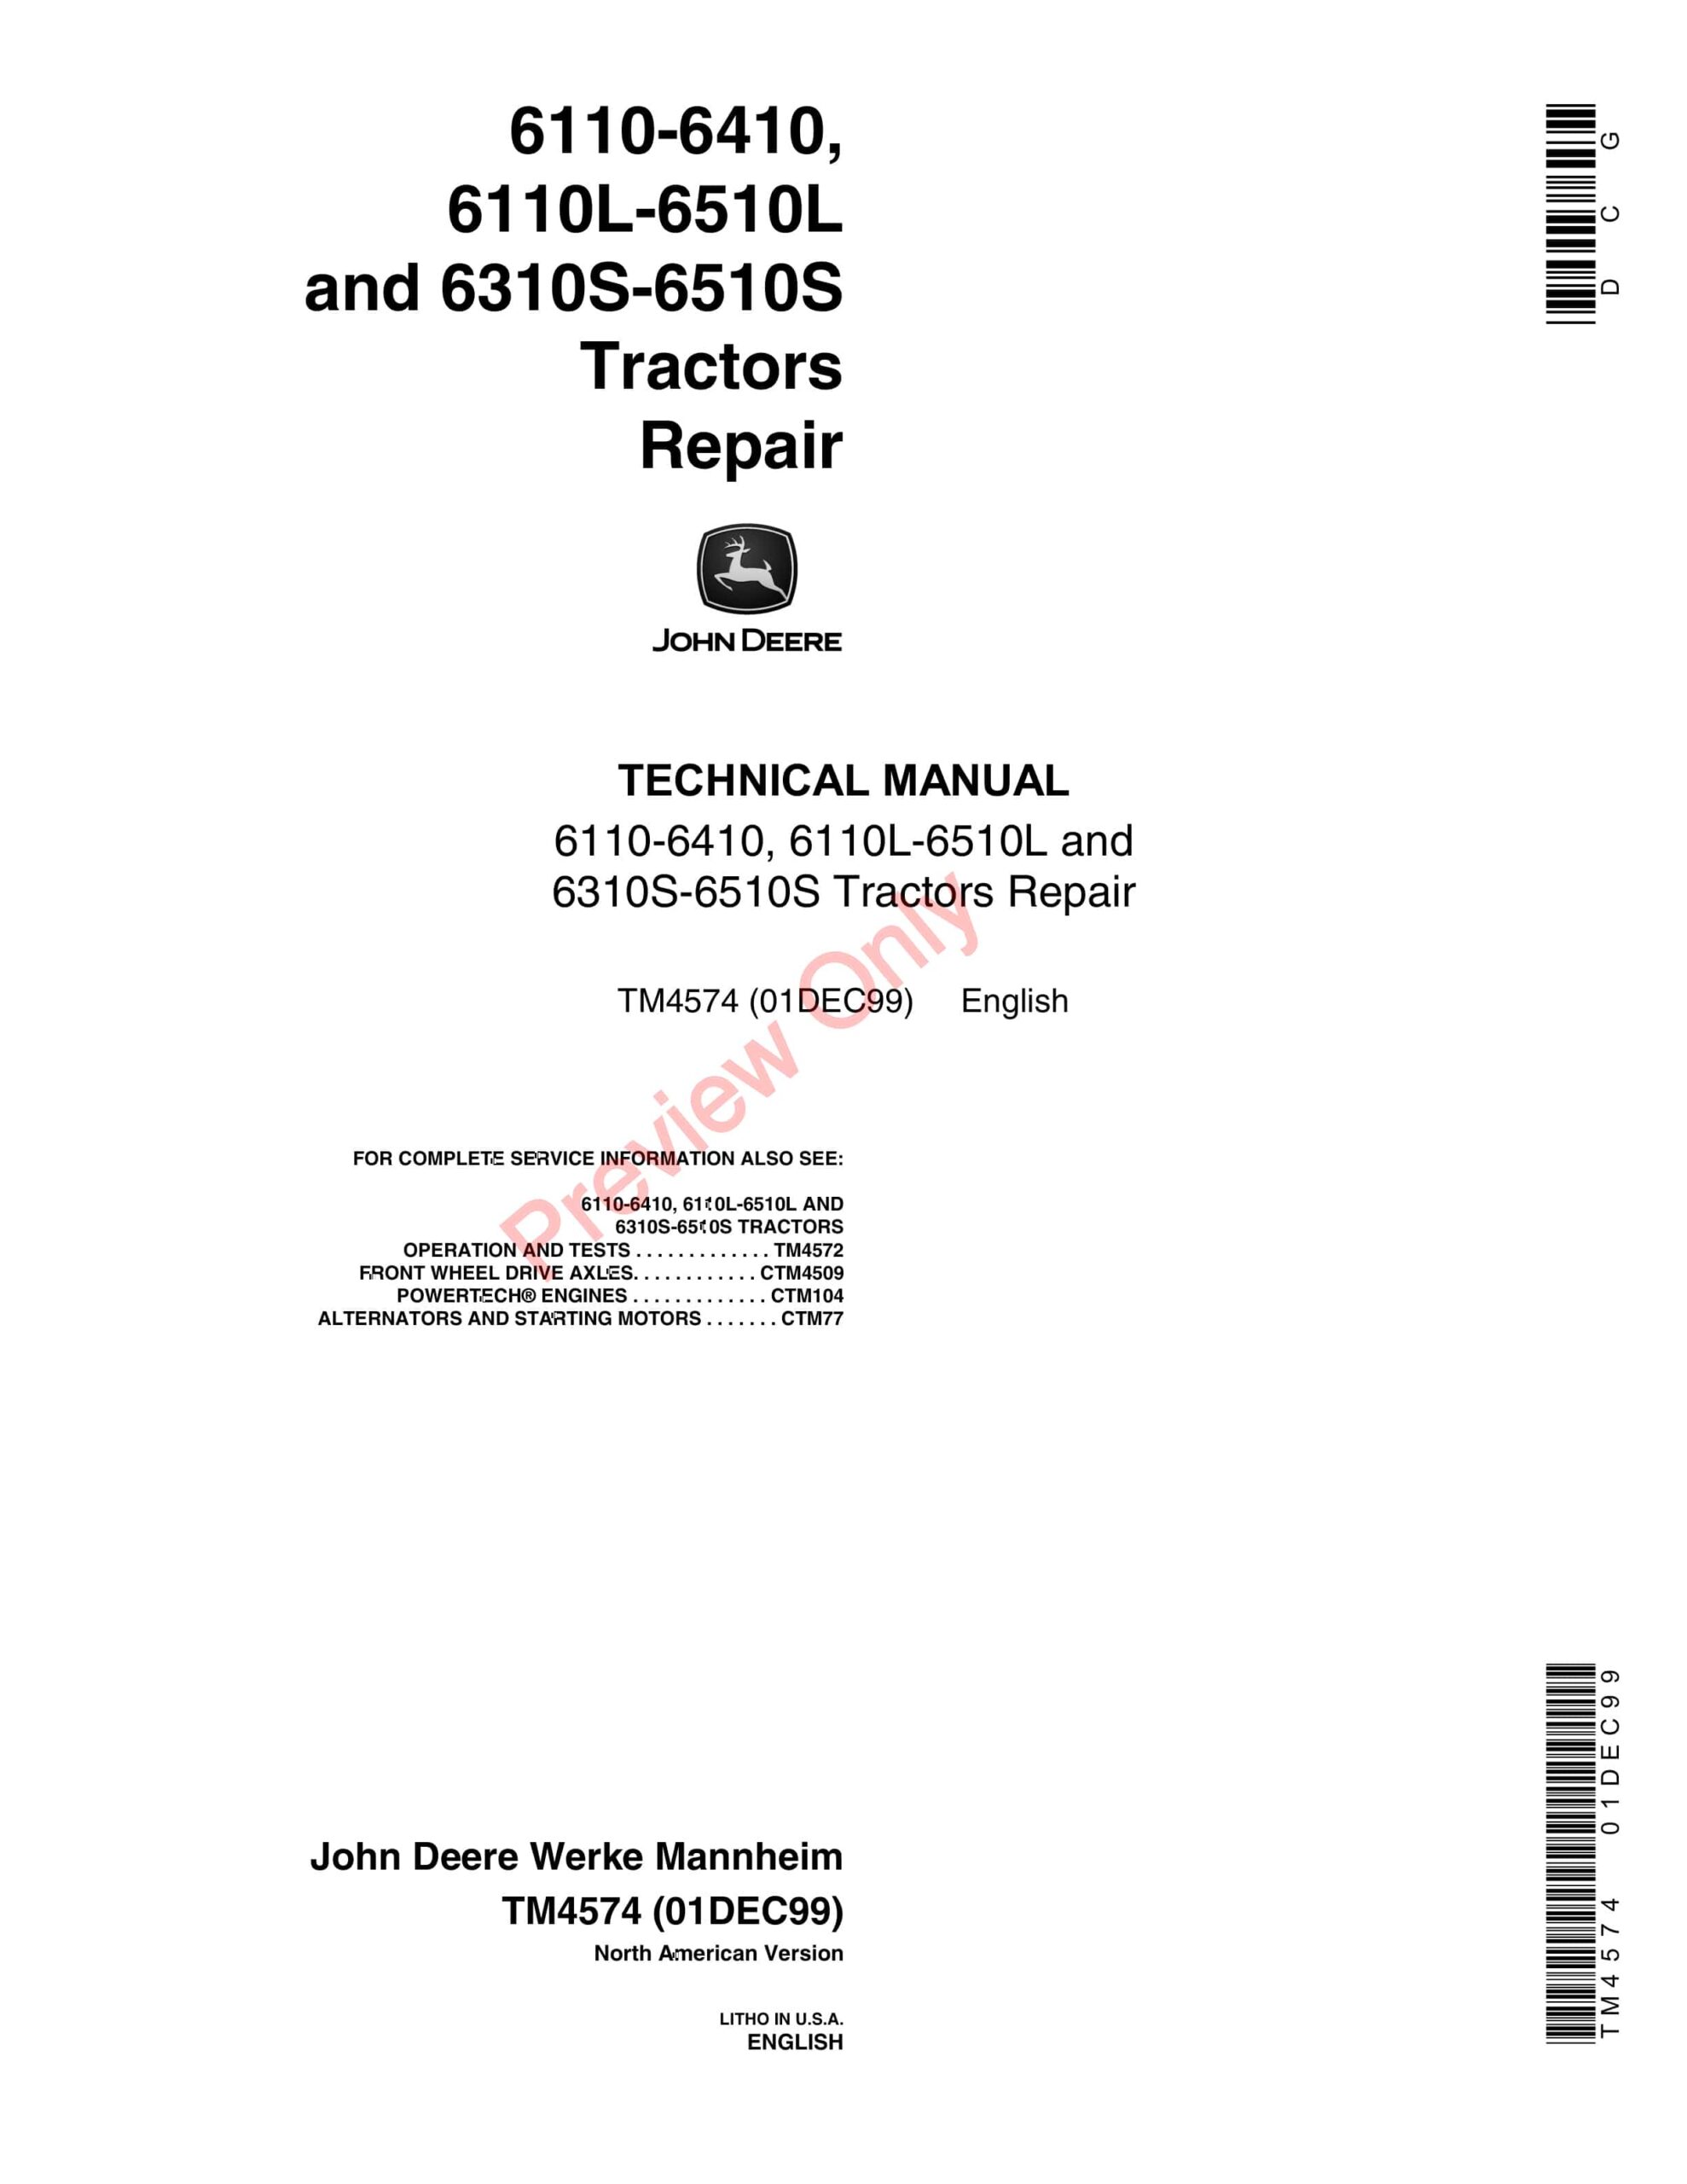 John Deere 6110-6410, 6110L-6510L and 6310S-6510S Tractors Technical Manual TM4574 01DEC99-1